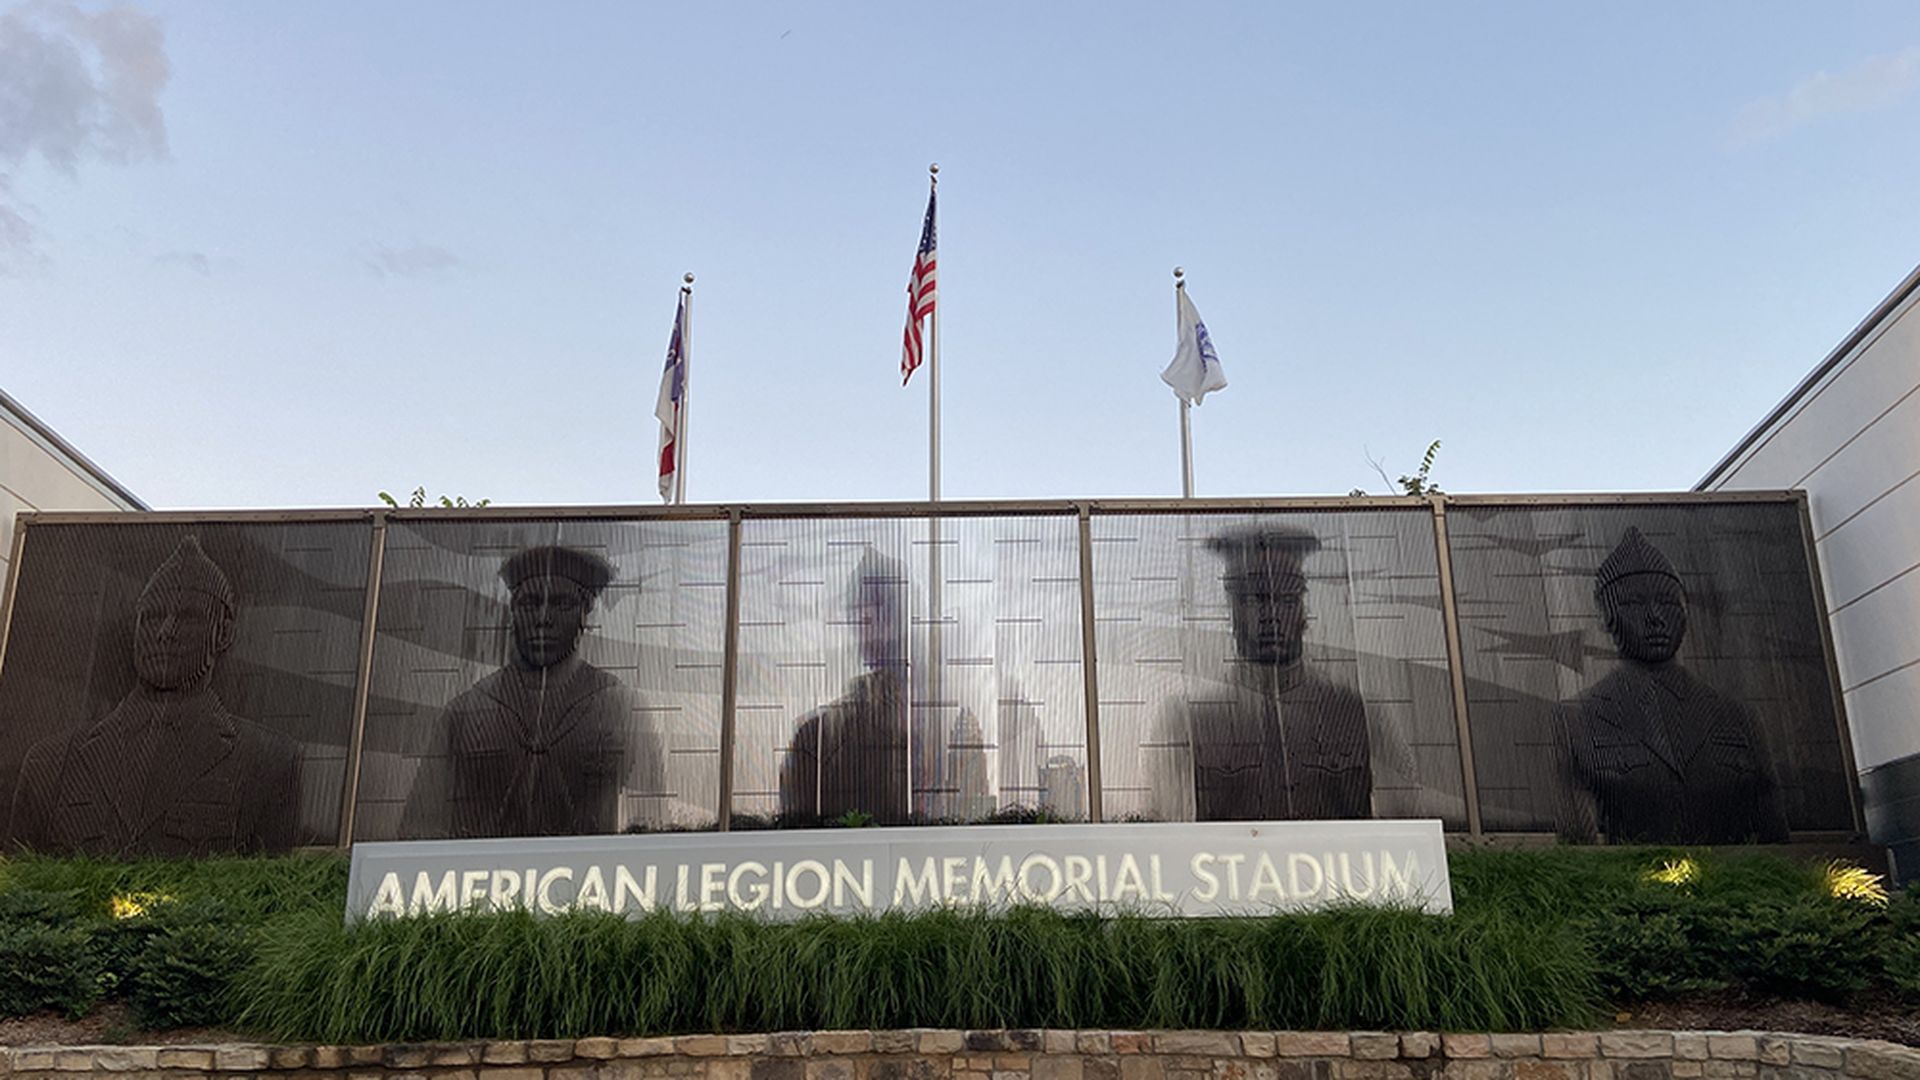 American Legion Memorial Stadium in Elizabeth.